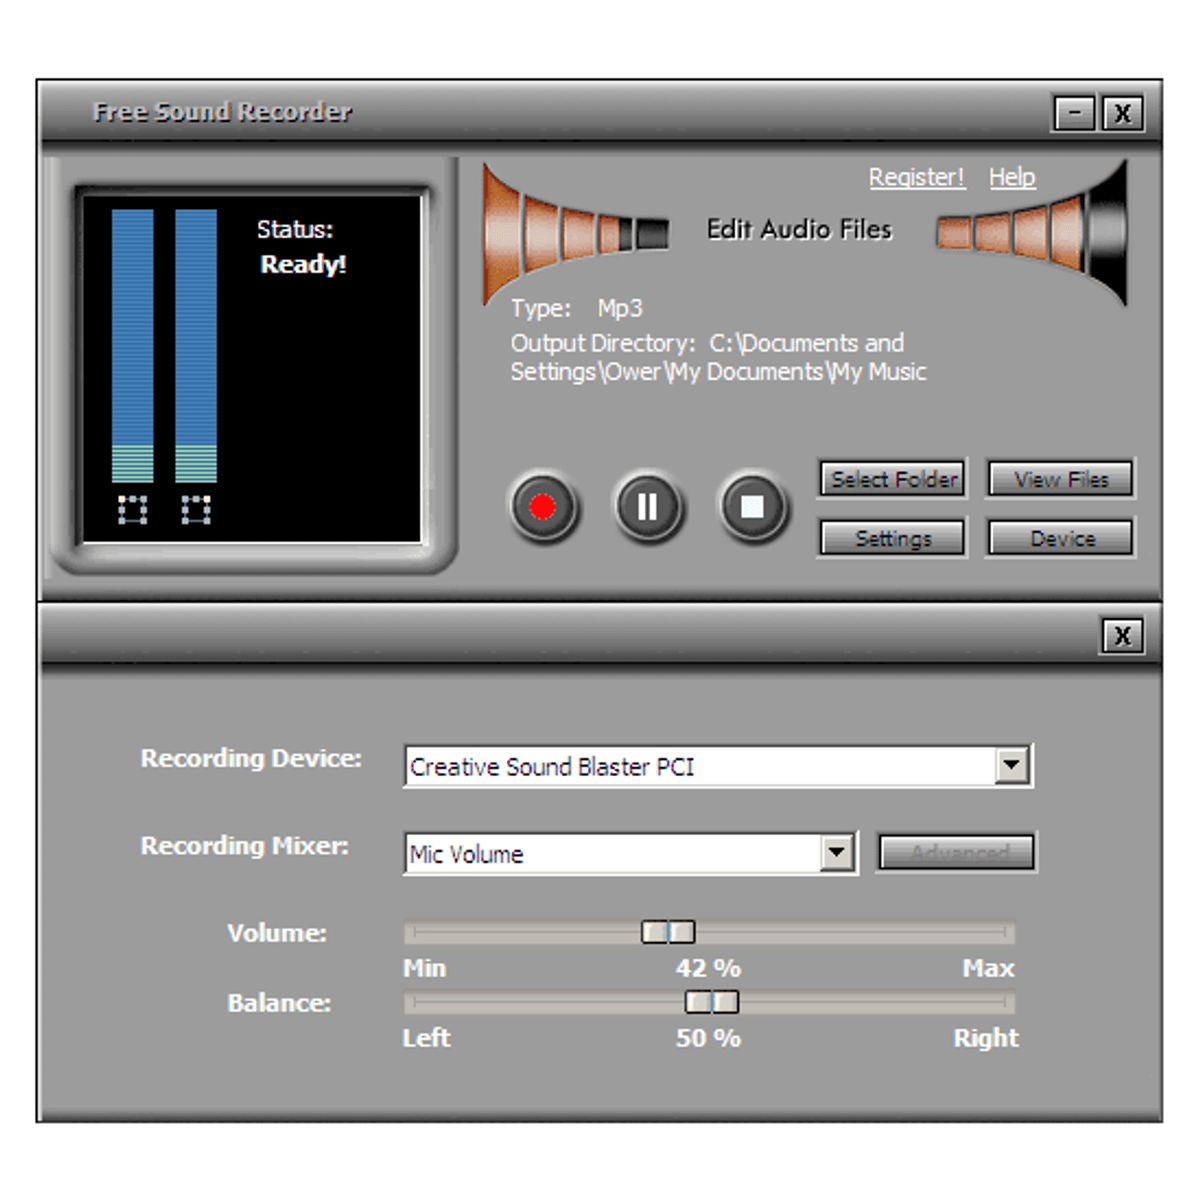 Бесплатное приложение для записи звука. Ghjuhfvvf lkz pderjpfgbcb YF gr. Программа для звукозаписи на компьютере. Audio Recorder программа.